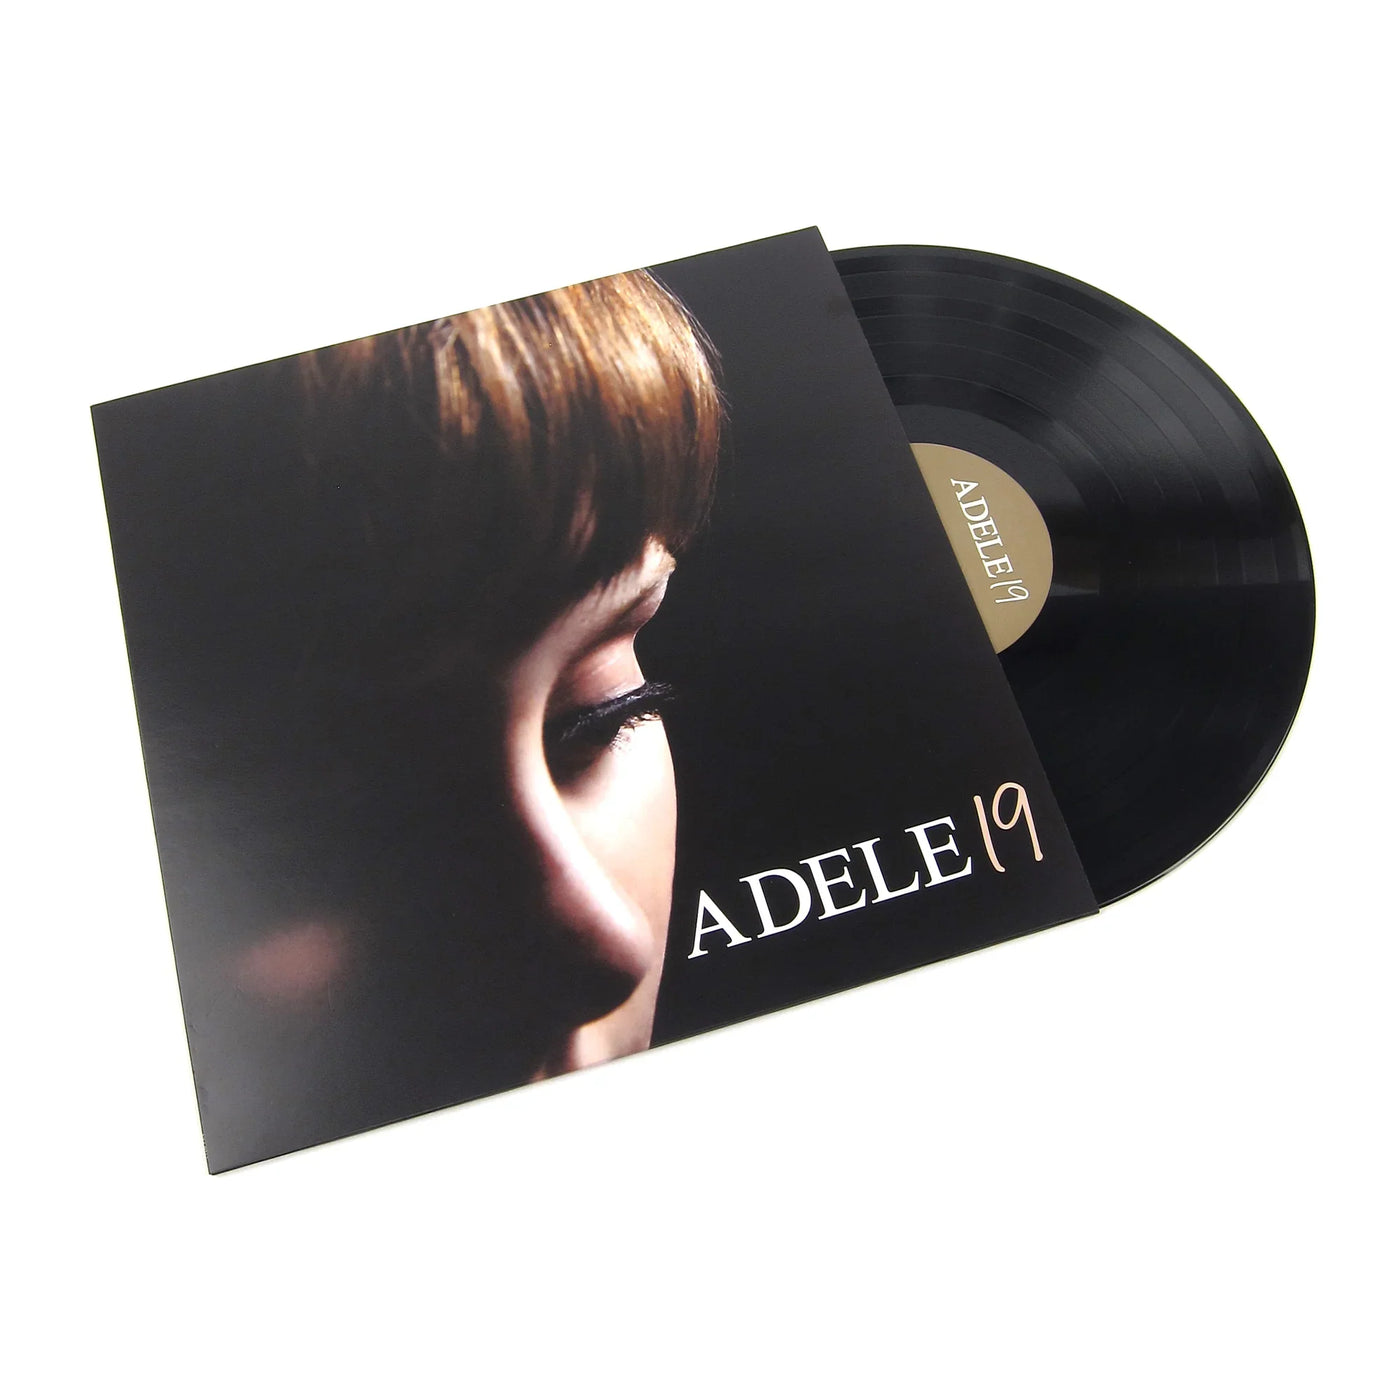 NEW/SEALED! Adele - 19